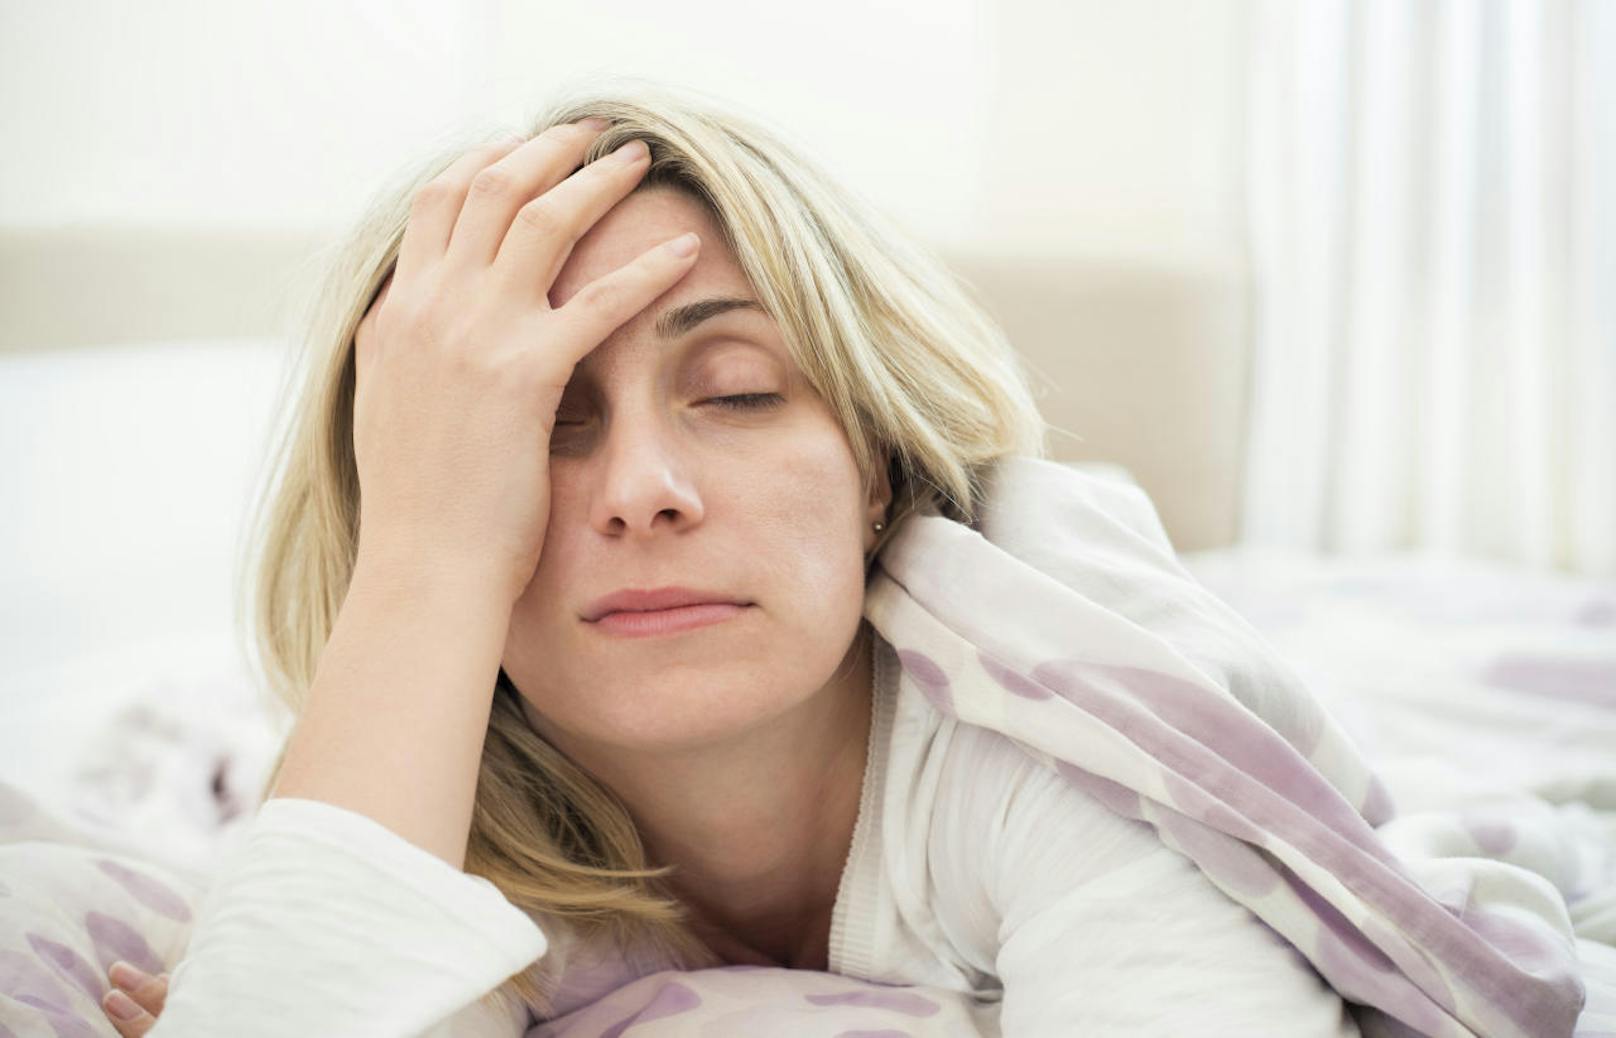 Welche Folgen bei chronischem Schlafmangel drohen, zeigen die nächsten Bilder: